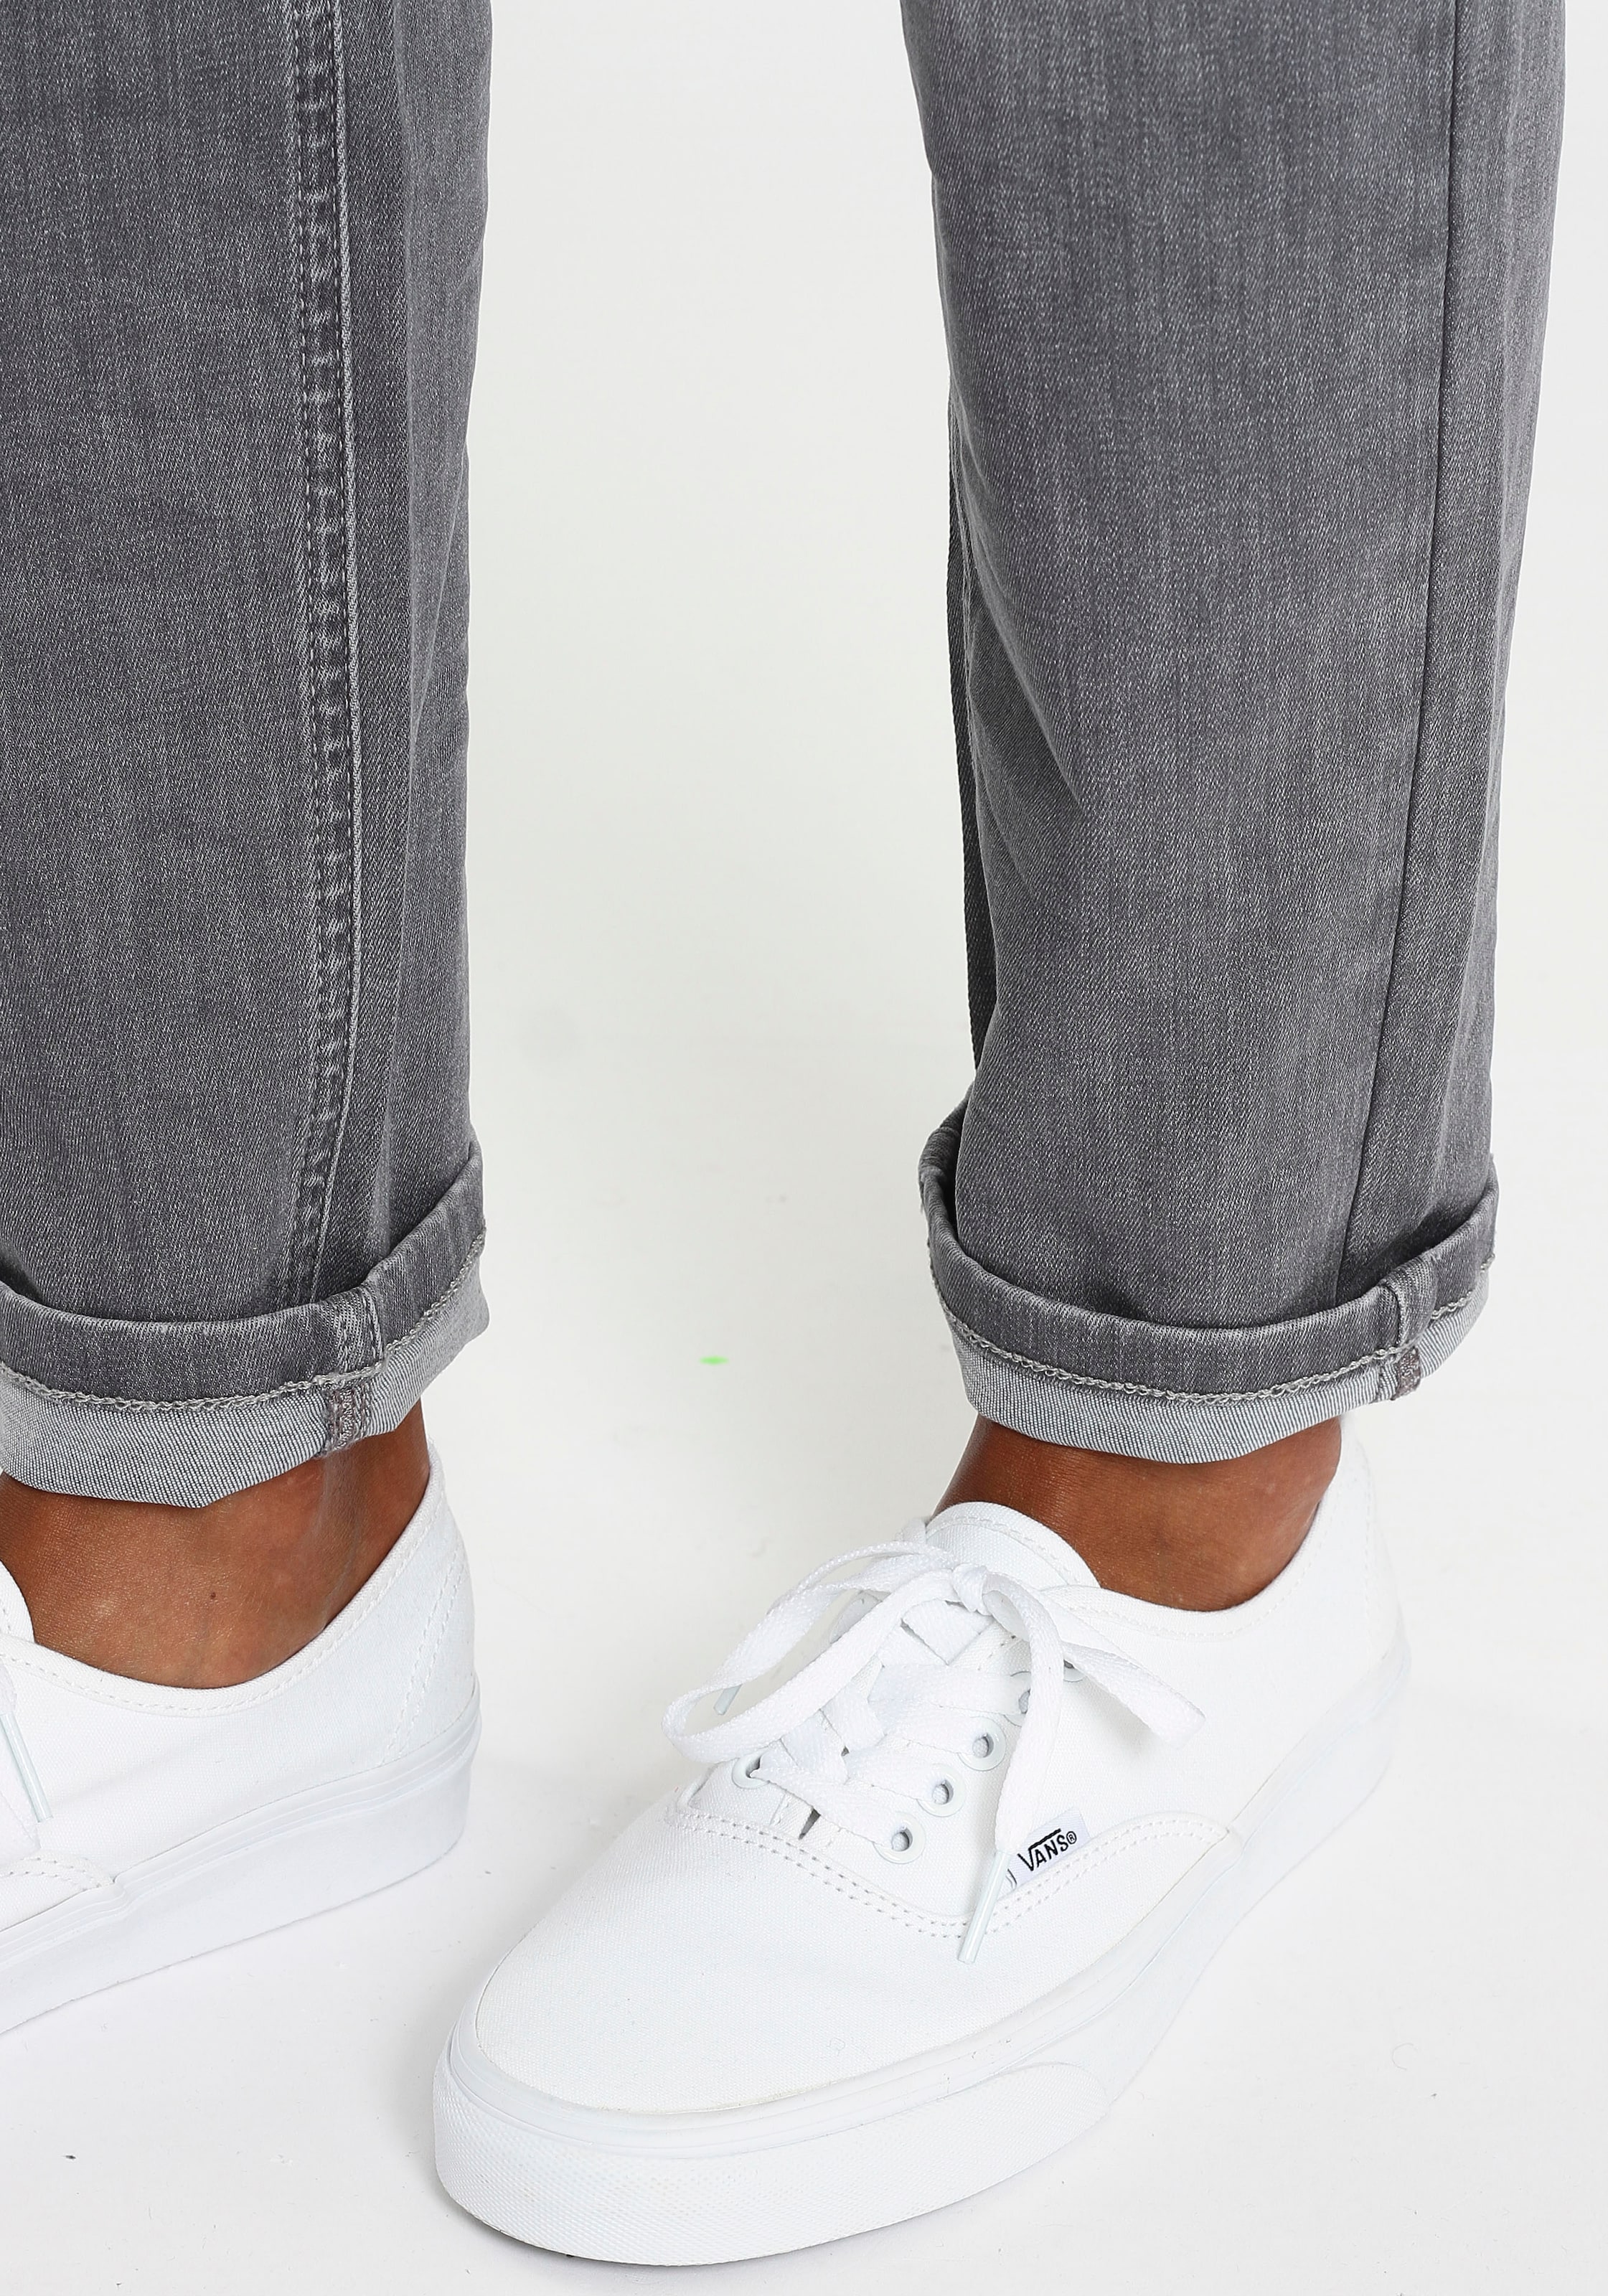 GANG Slim-fit-Jeans »94JOJO«, Bewegungsfreiheit mit großer Formstabilität